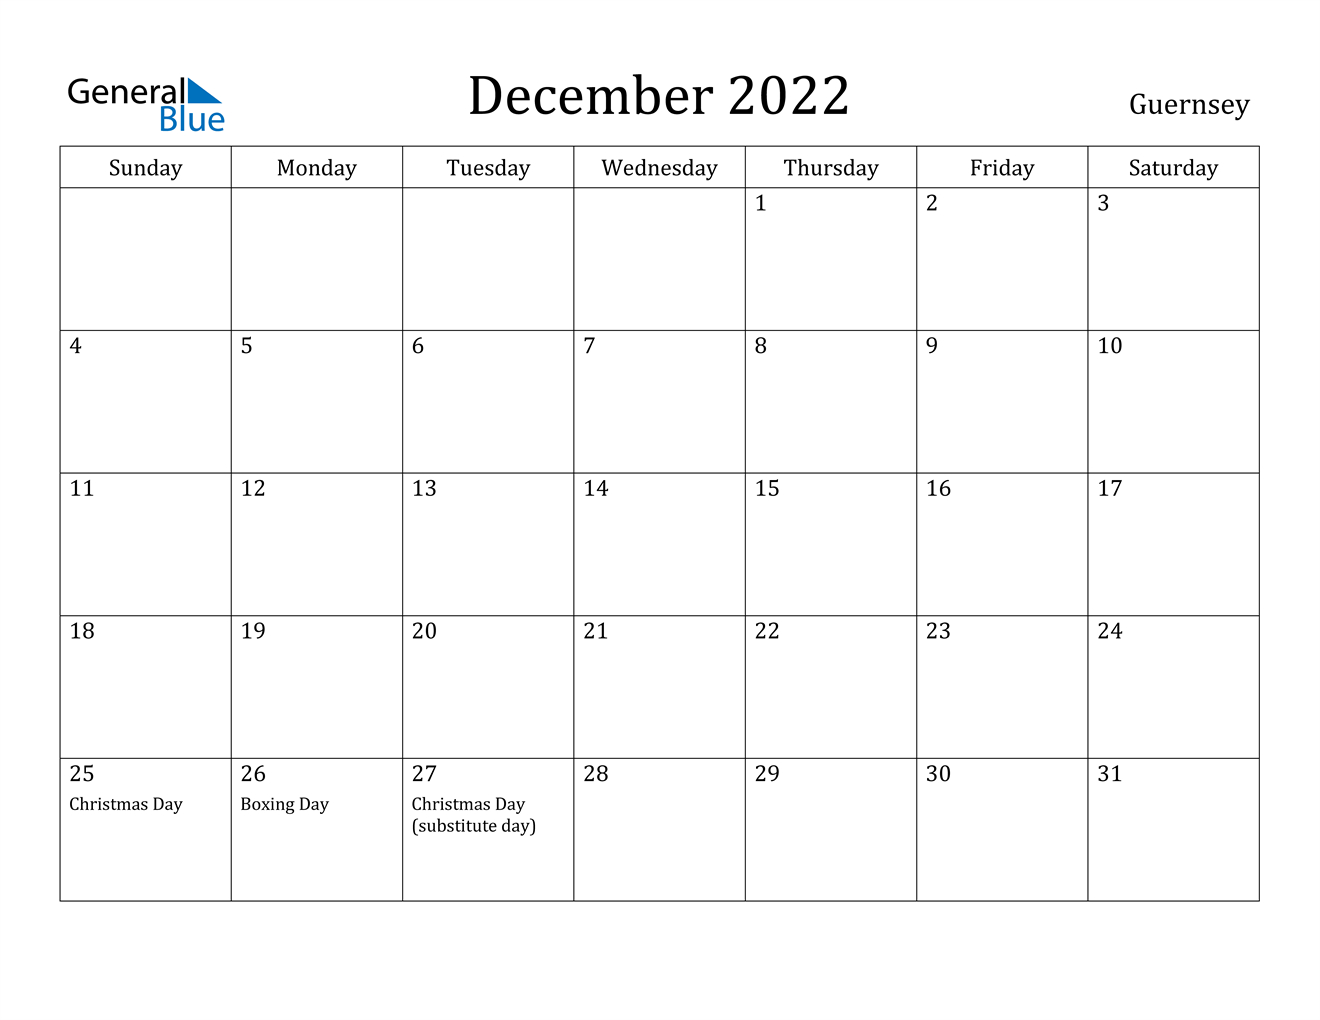 December 2022 Calendar - Guernsey